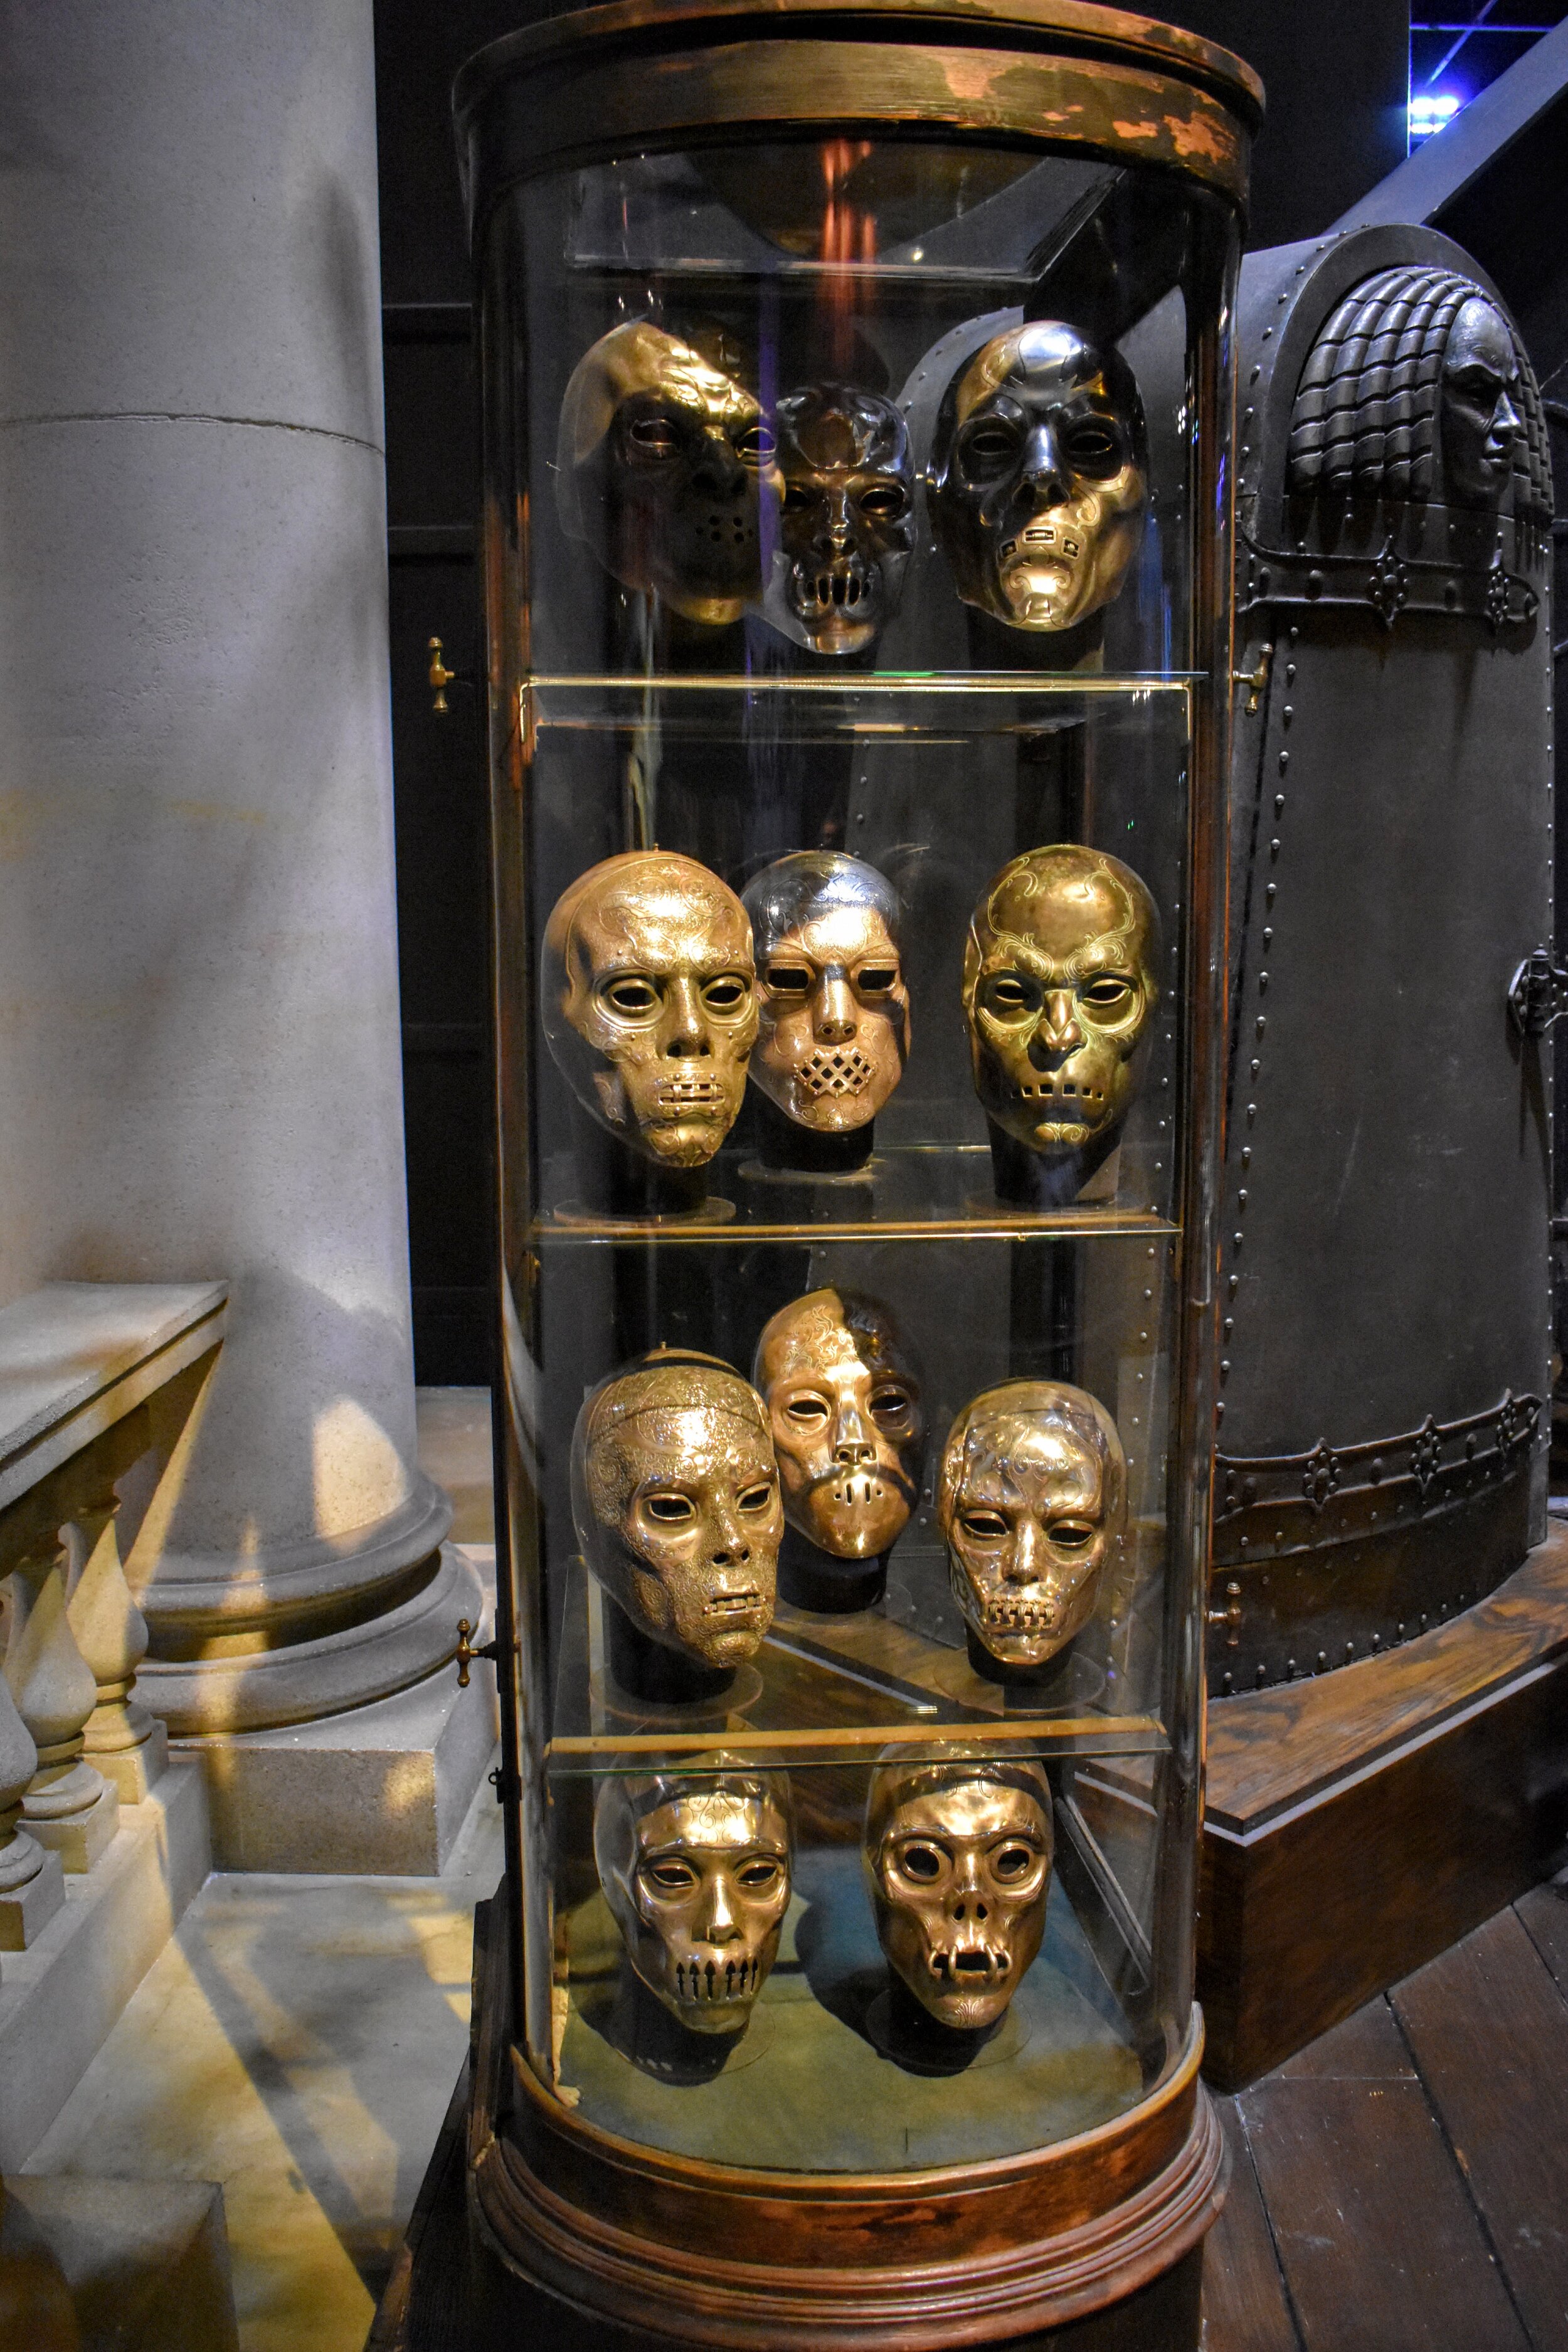 Death Eater Masks